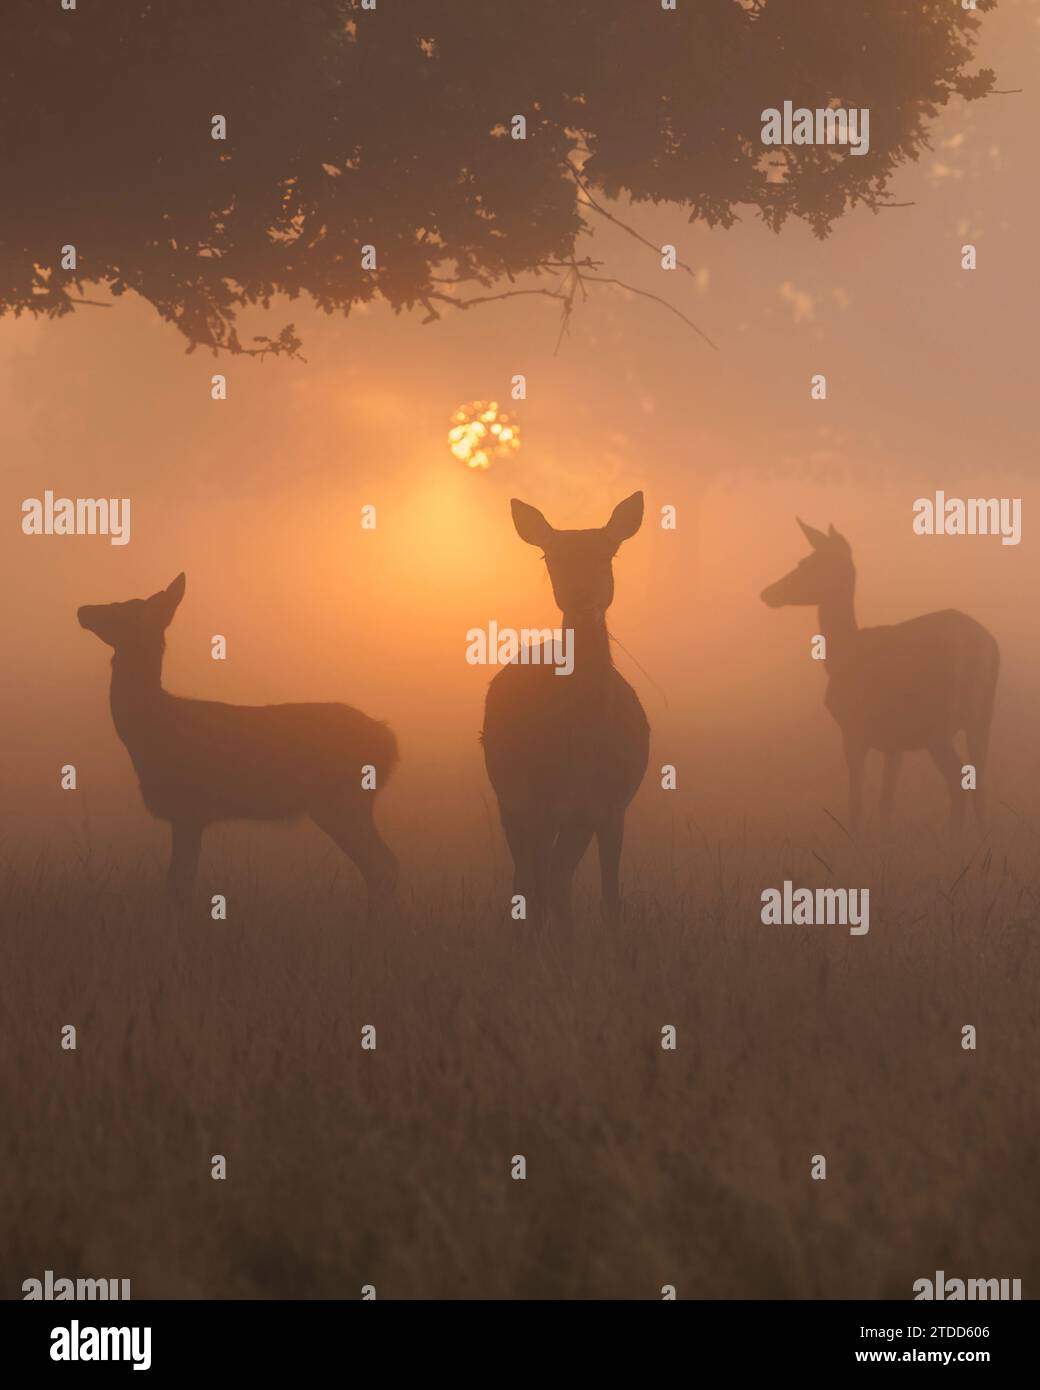 Le photographe a attendu que le soleil franchit l'horizon pour photographier ces trois cerfs debout parmi les anciens chênes. Image ENCHANTERESSE au Royaume-Uni Banque D'Images